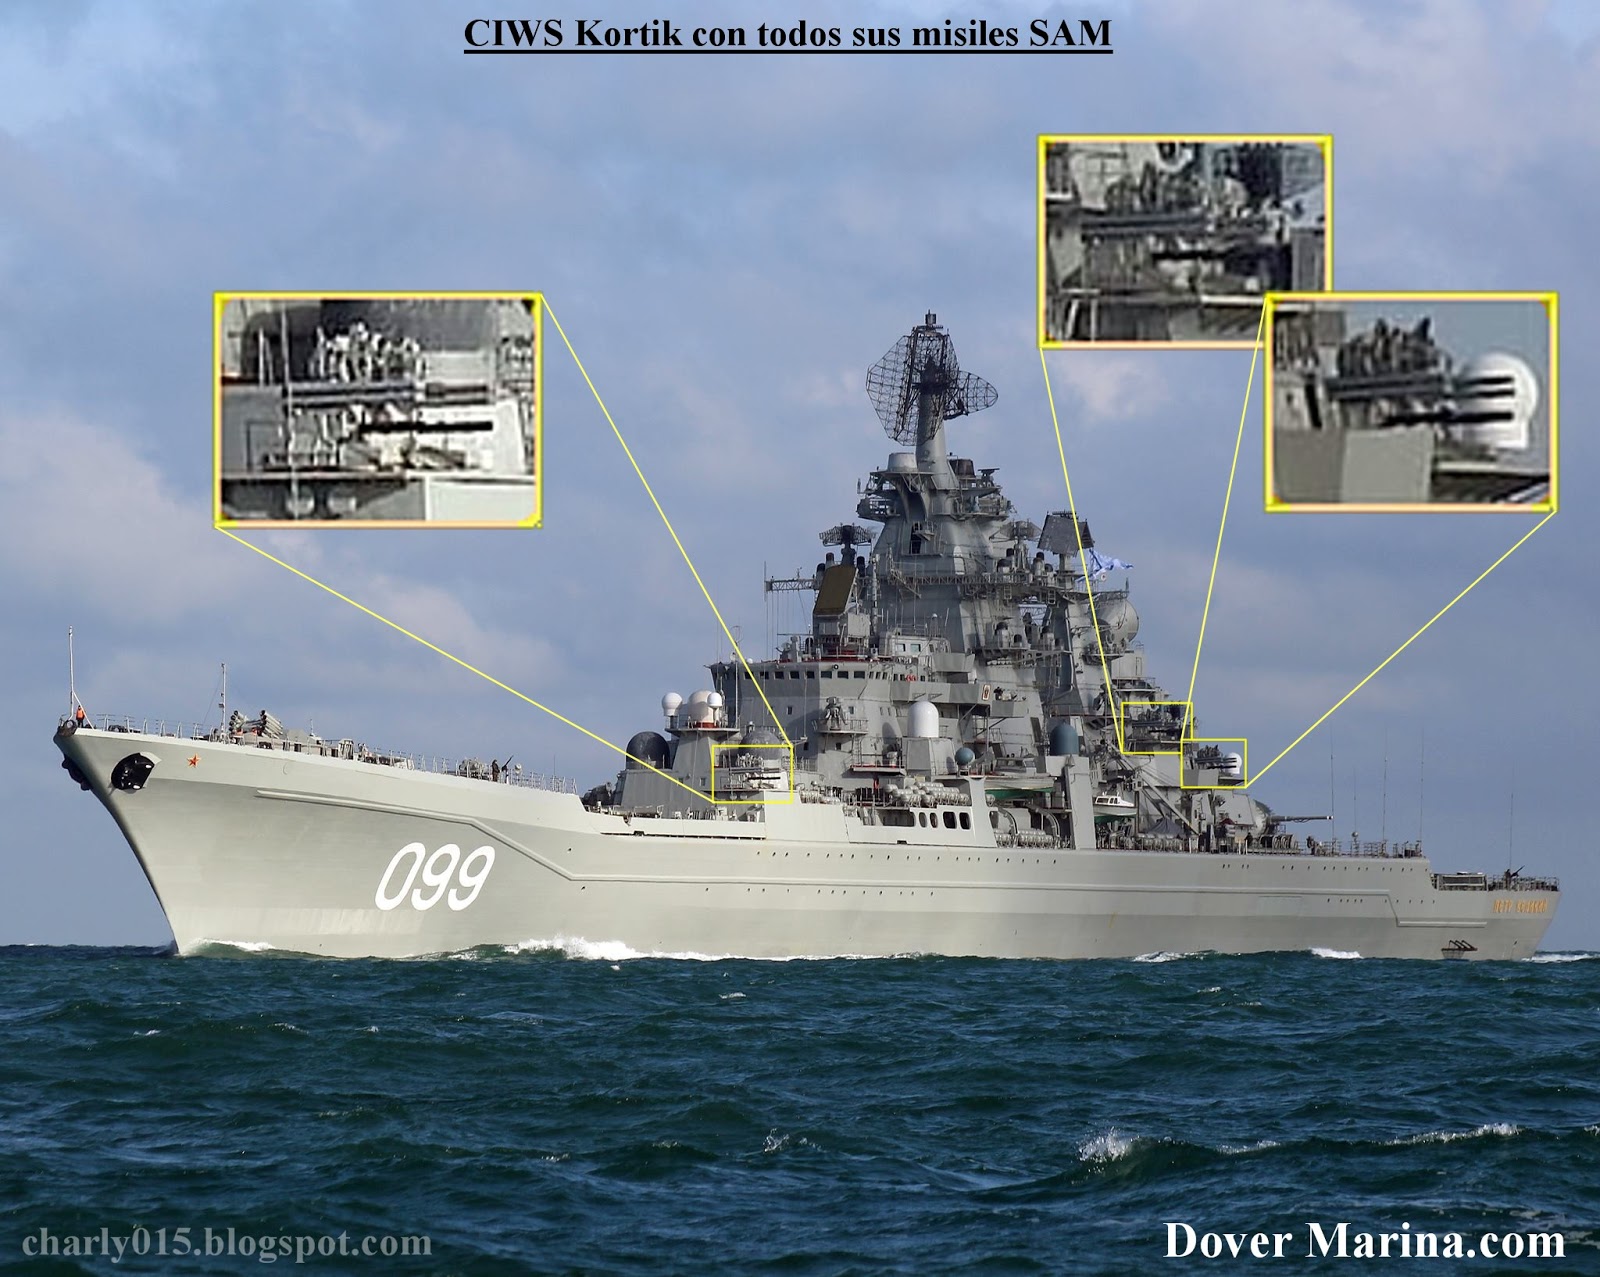  Tensión en el Canal de la Mancha: la Marina británica escolta a buques de guerra rusos 1144%2Bsams%2Ba